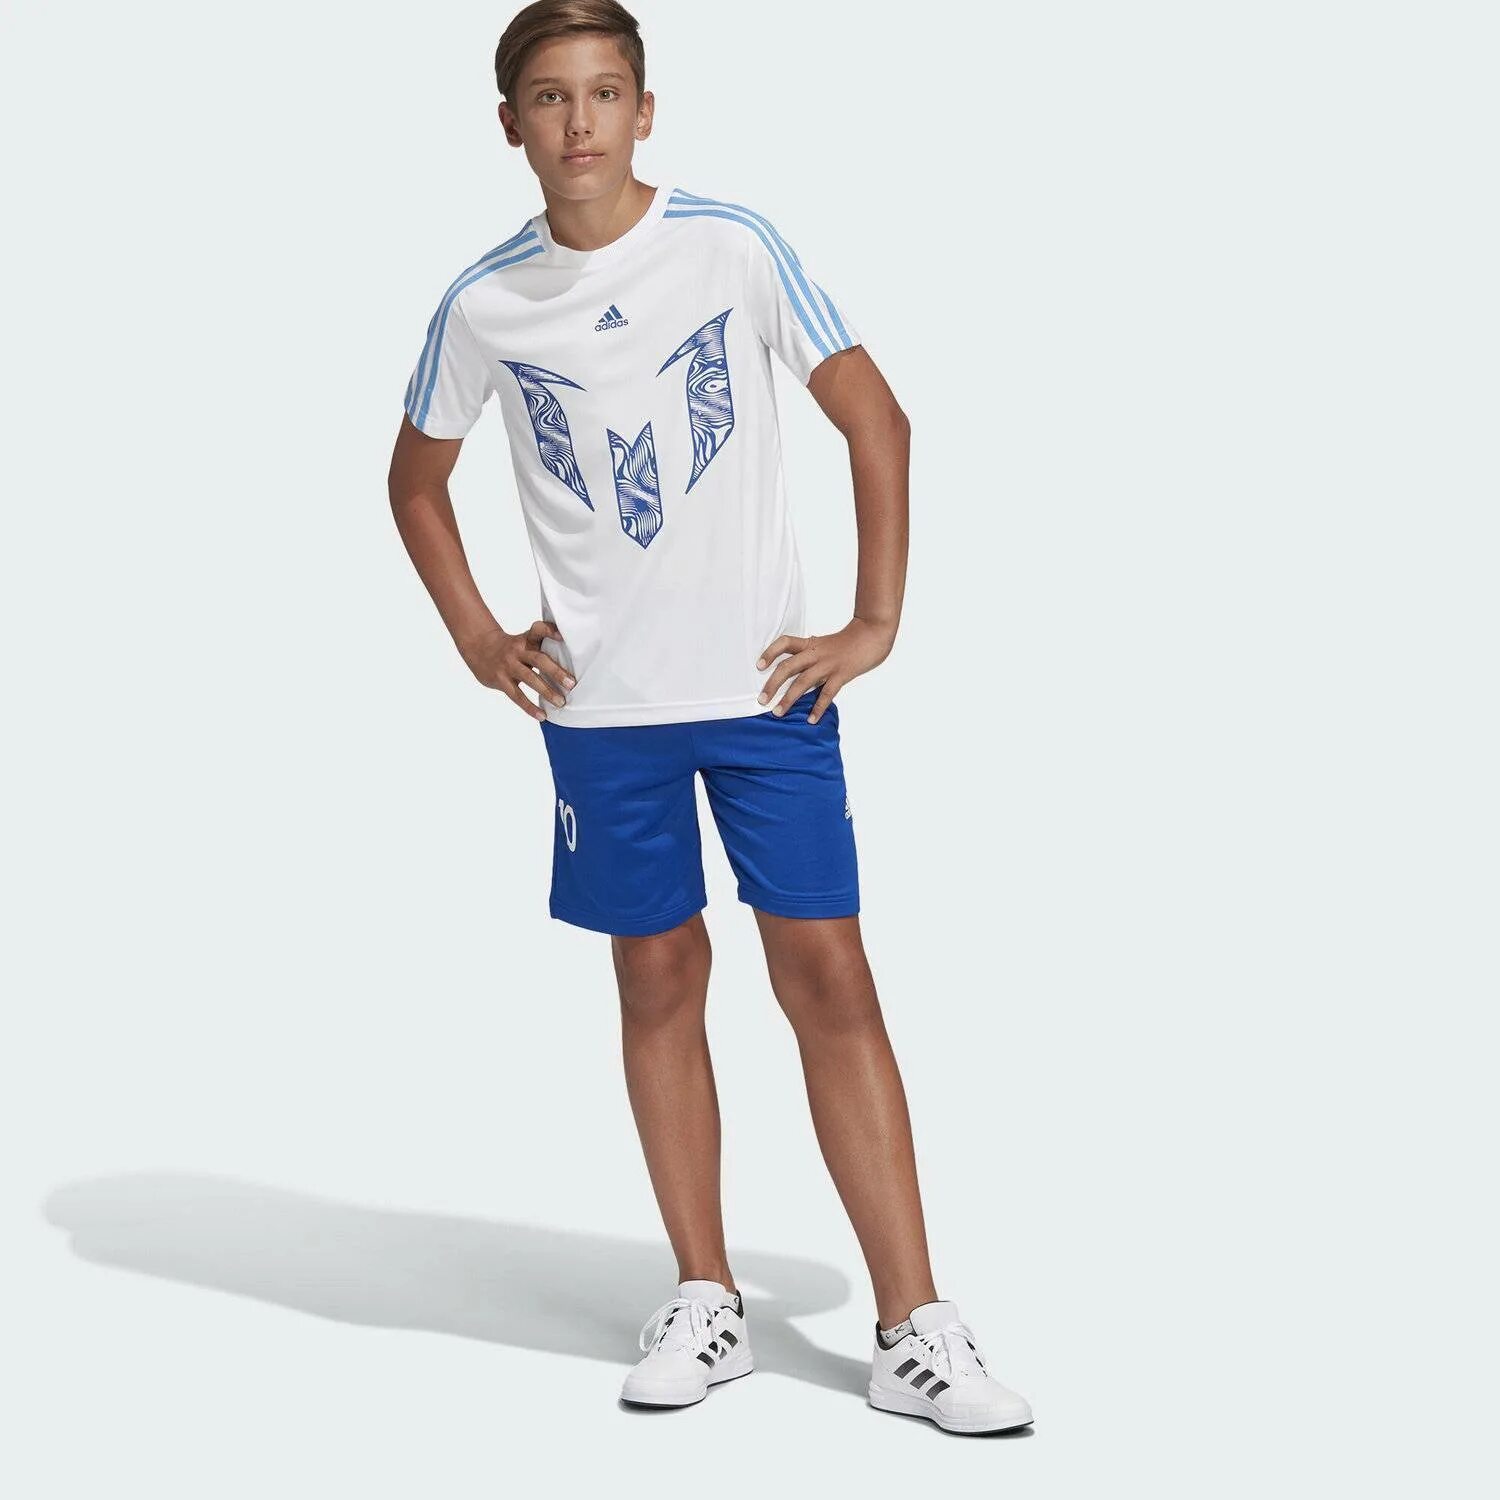 Шорты adidas Messi мальчиков. Adidas Sportswear шорты и футболка комплект. Шорты adidas и футболка адидас. Шорты и футболка адидас мужские комплект.